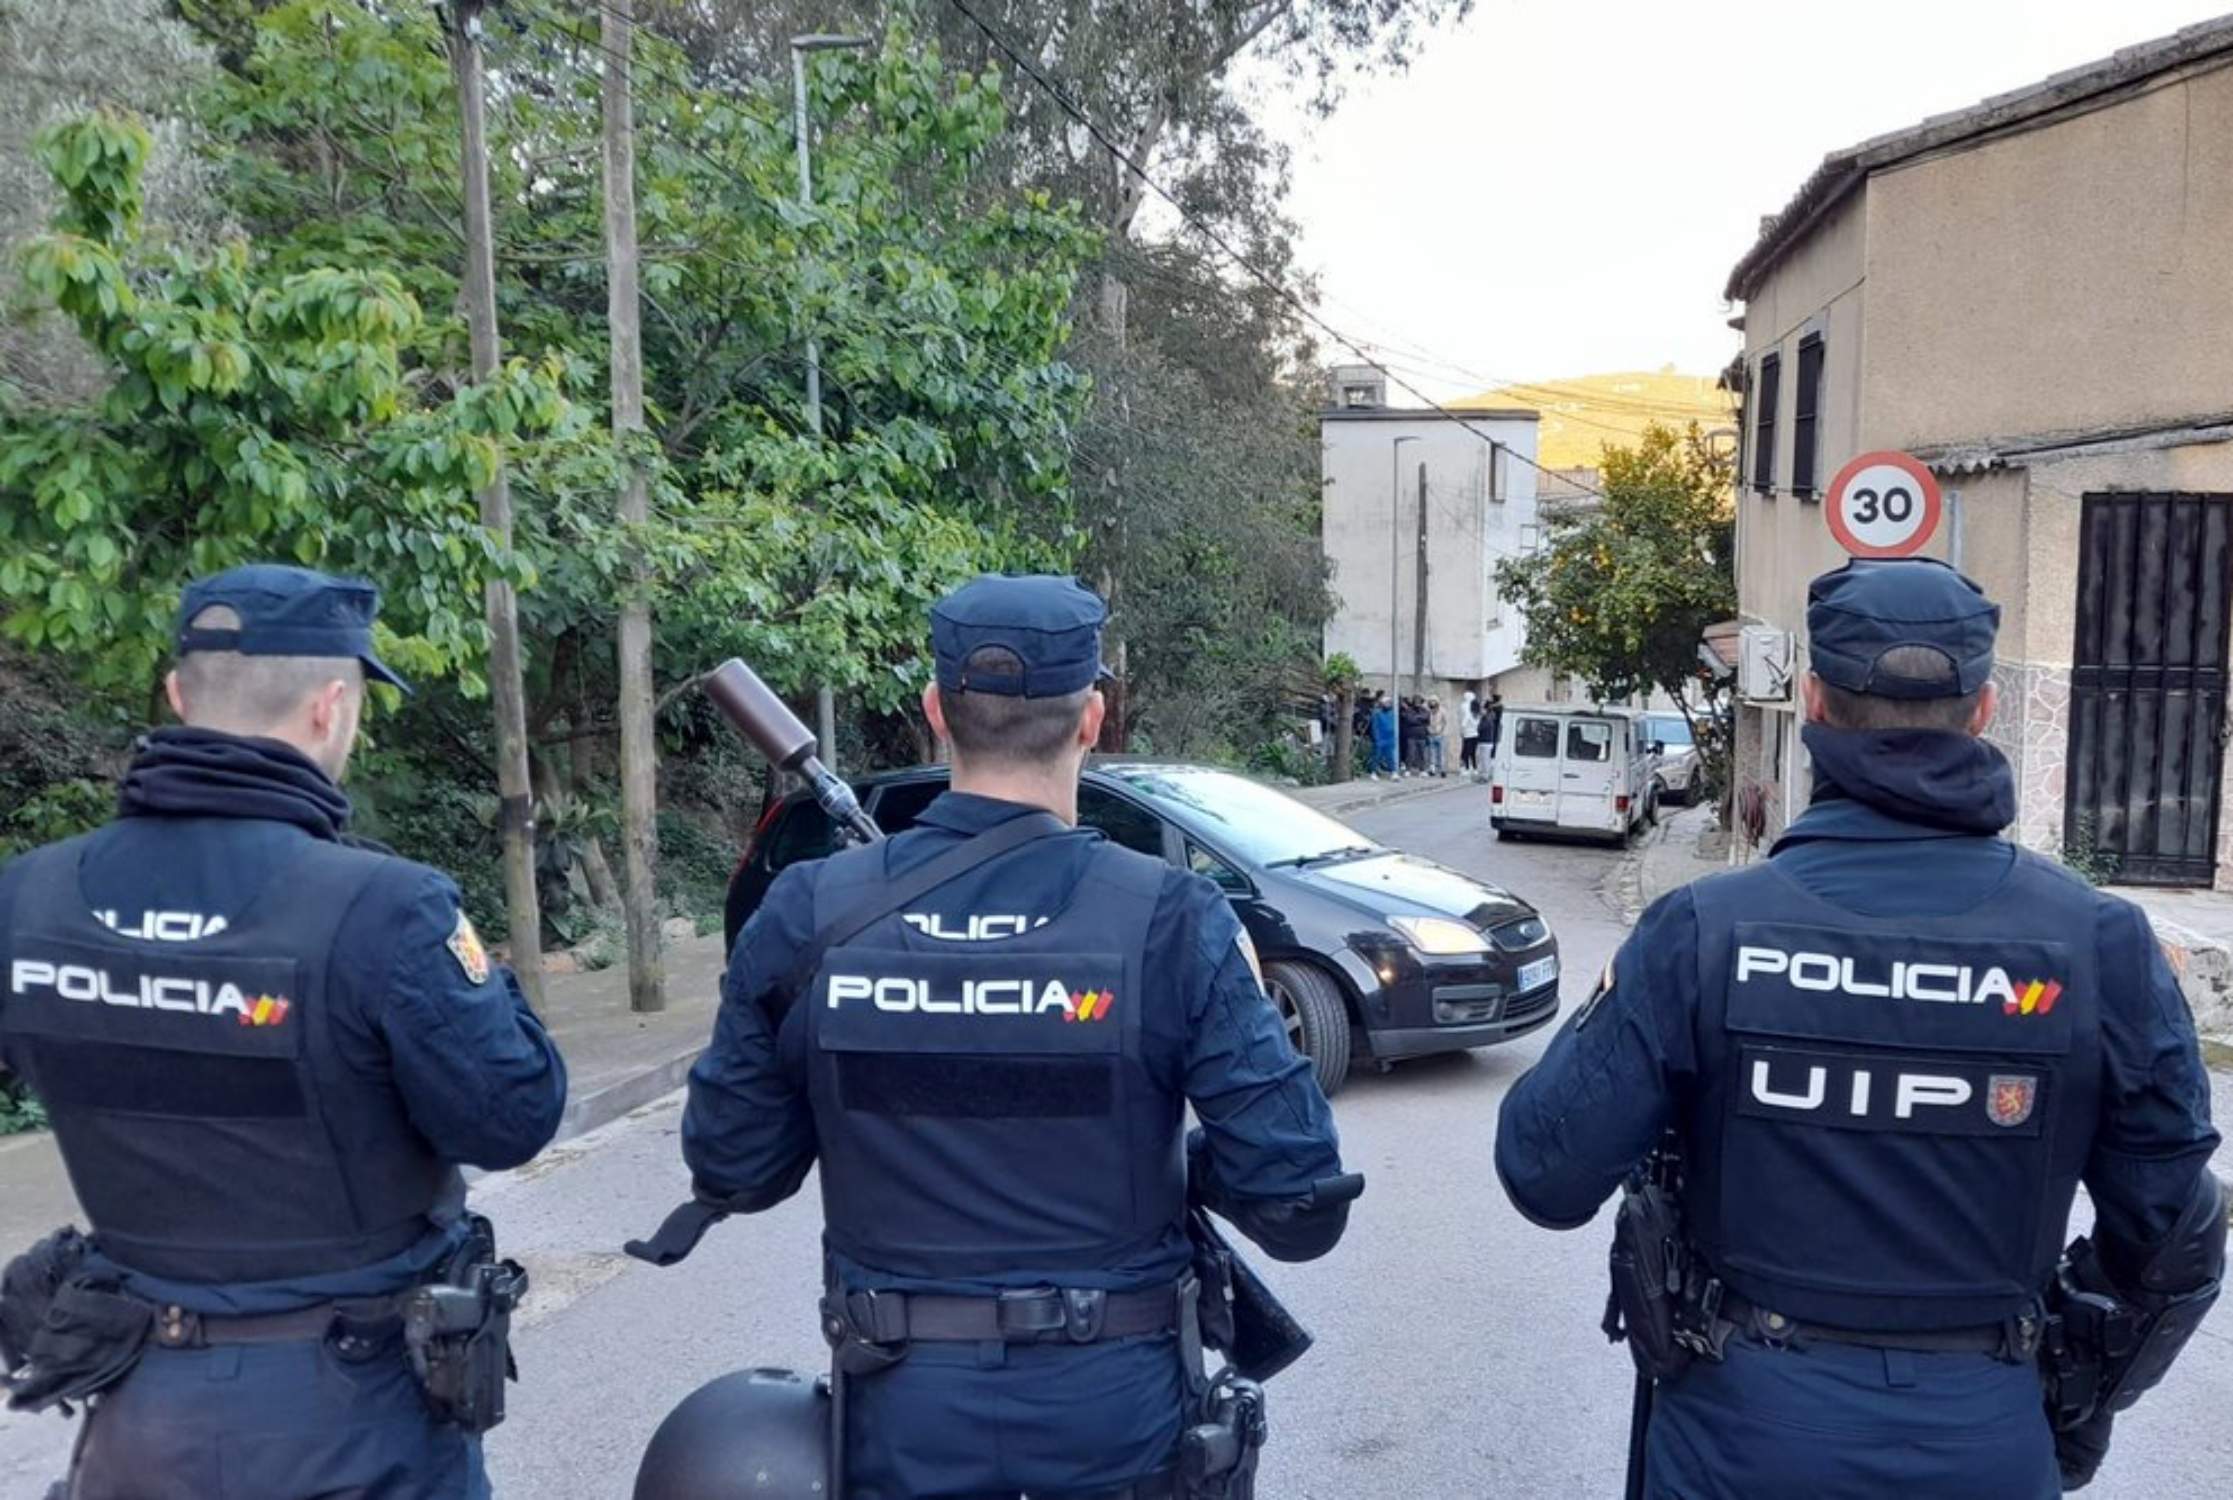 Important cop policial contra les plantacions de marihuana de Catalunya que serveixen per abastir Europa